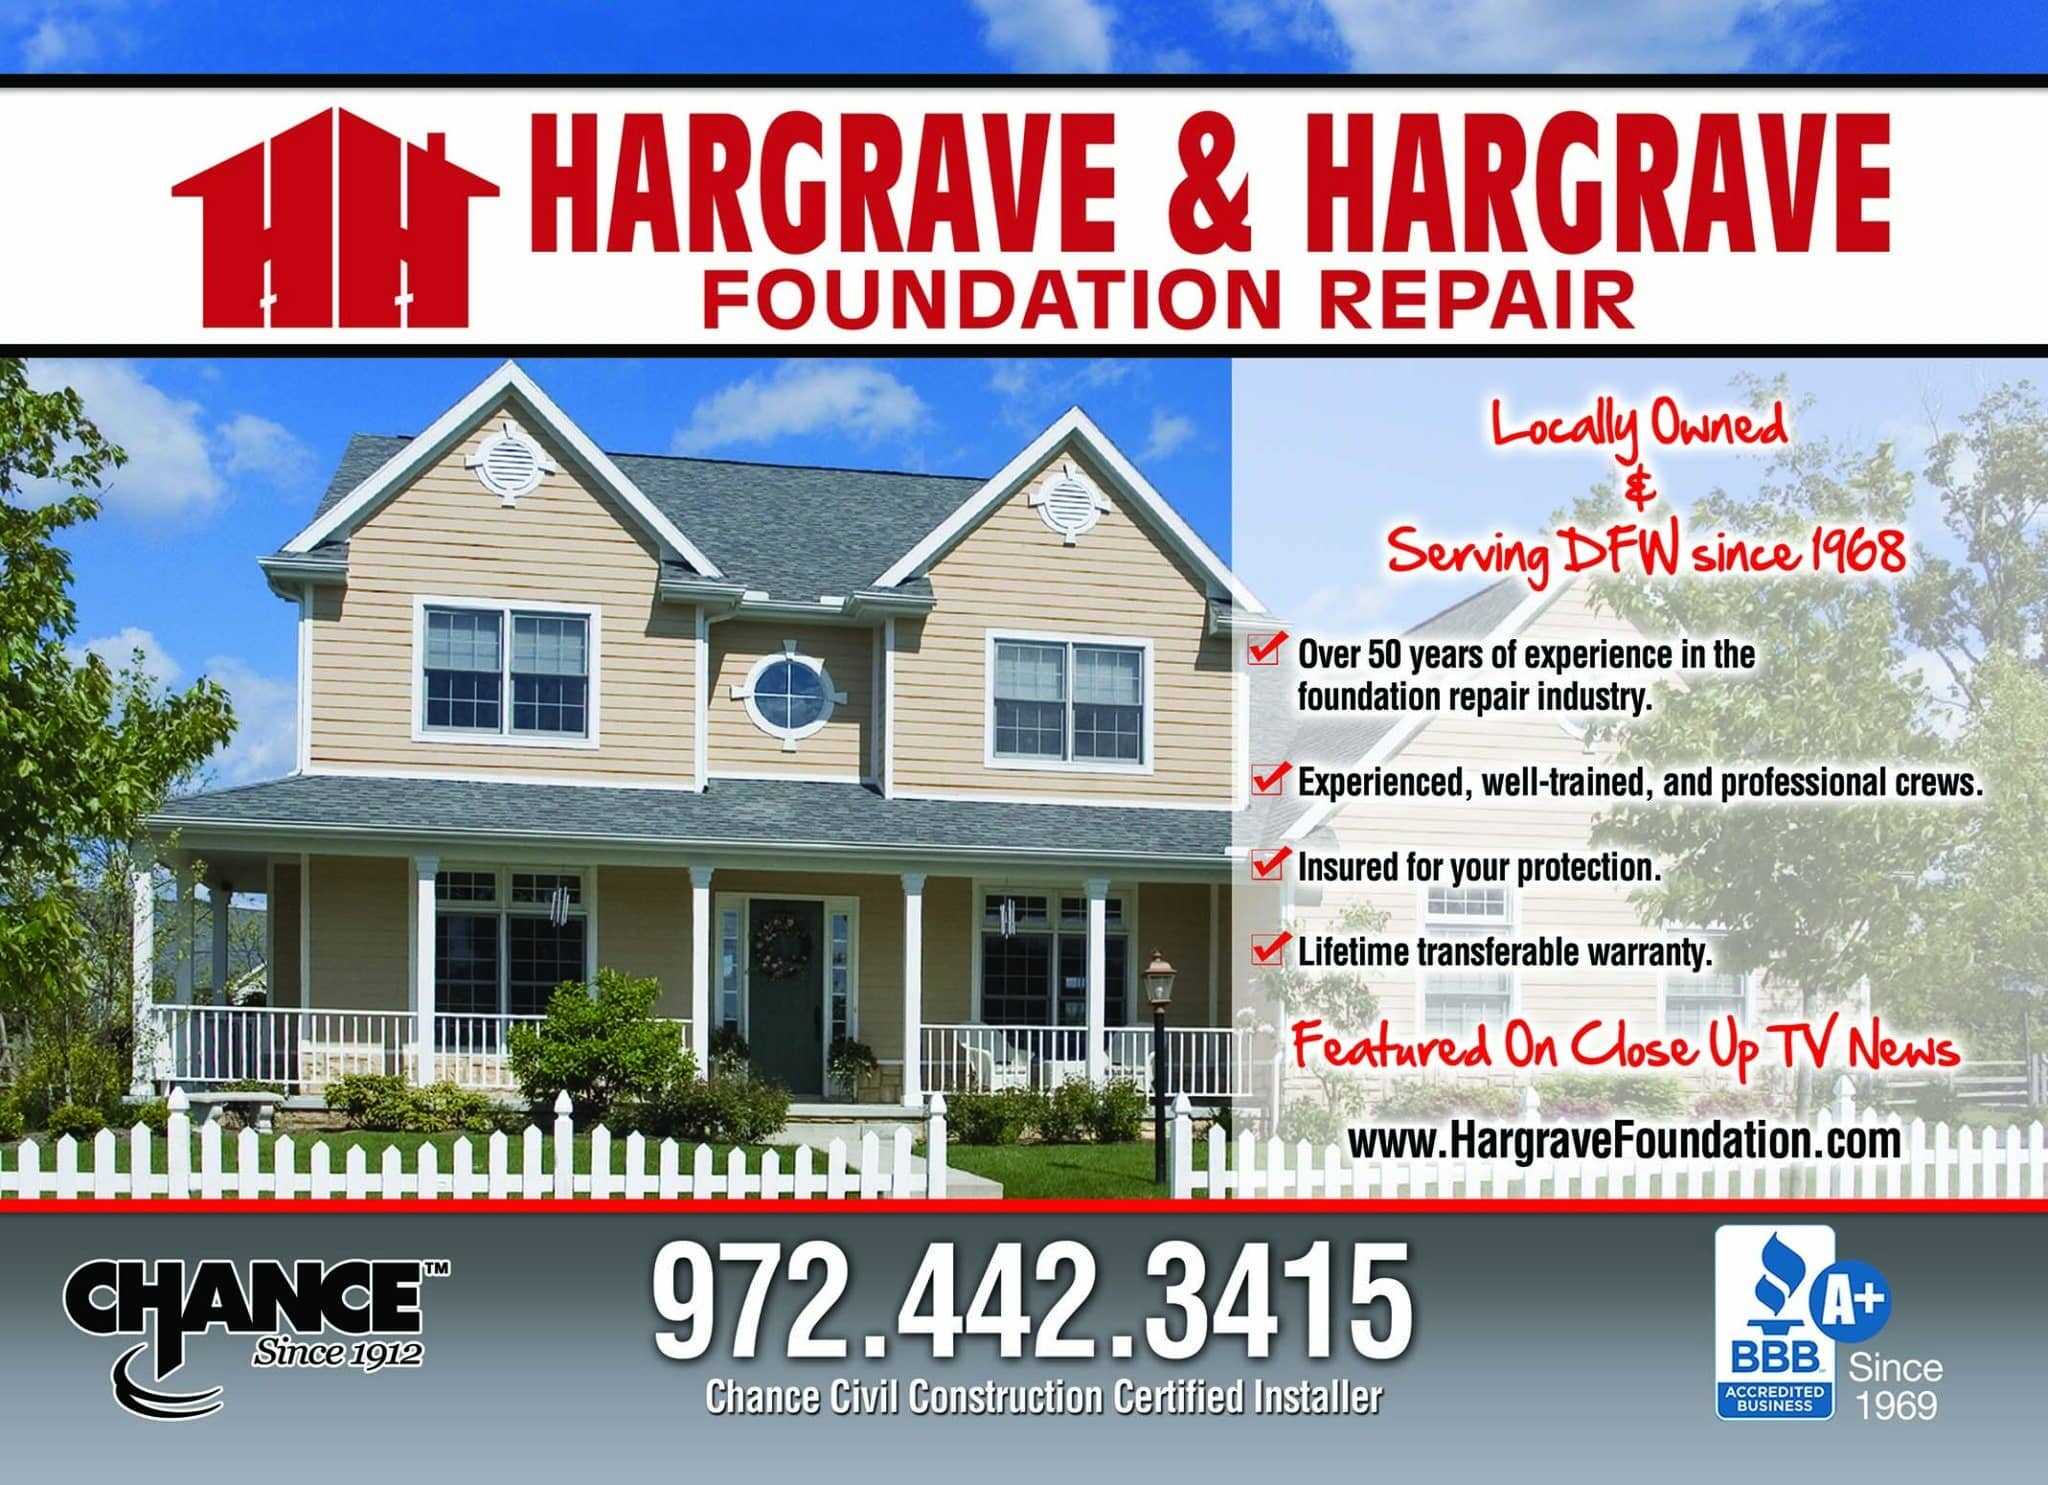 Hargrave & Hargrave Foundation Repair 972-442-3415